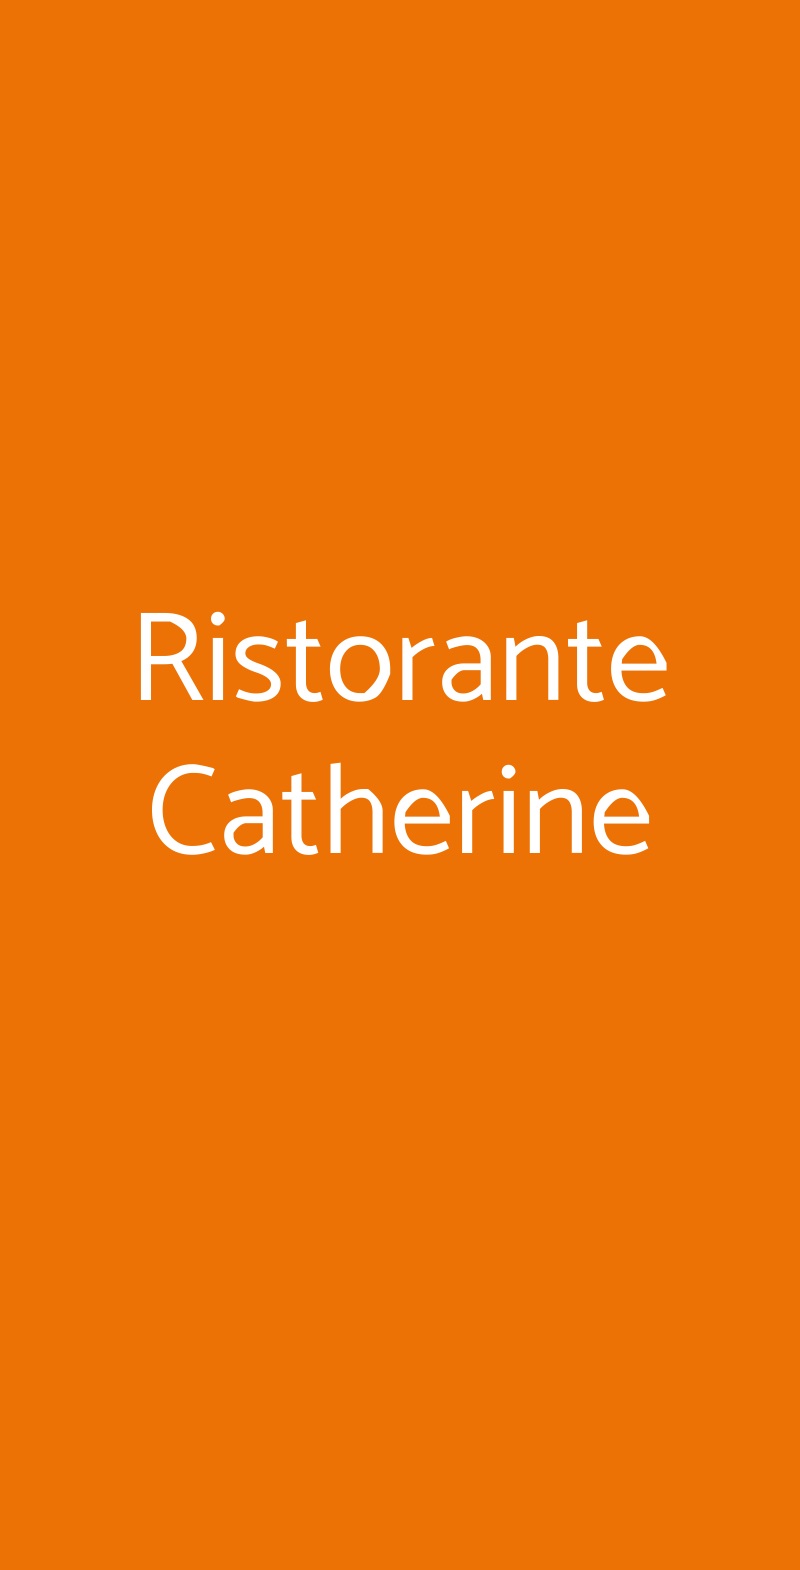 Ristorante Catherine Castel Maggiore menù 1 pagina